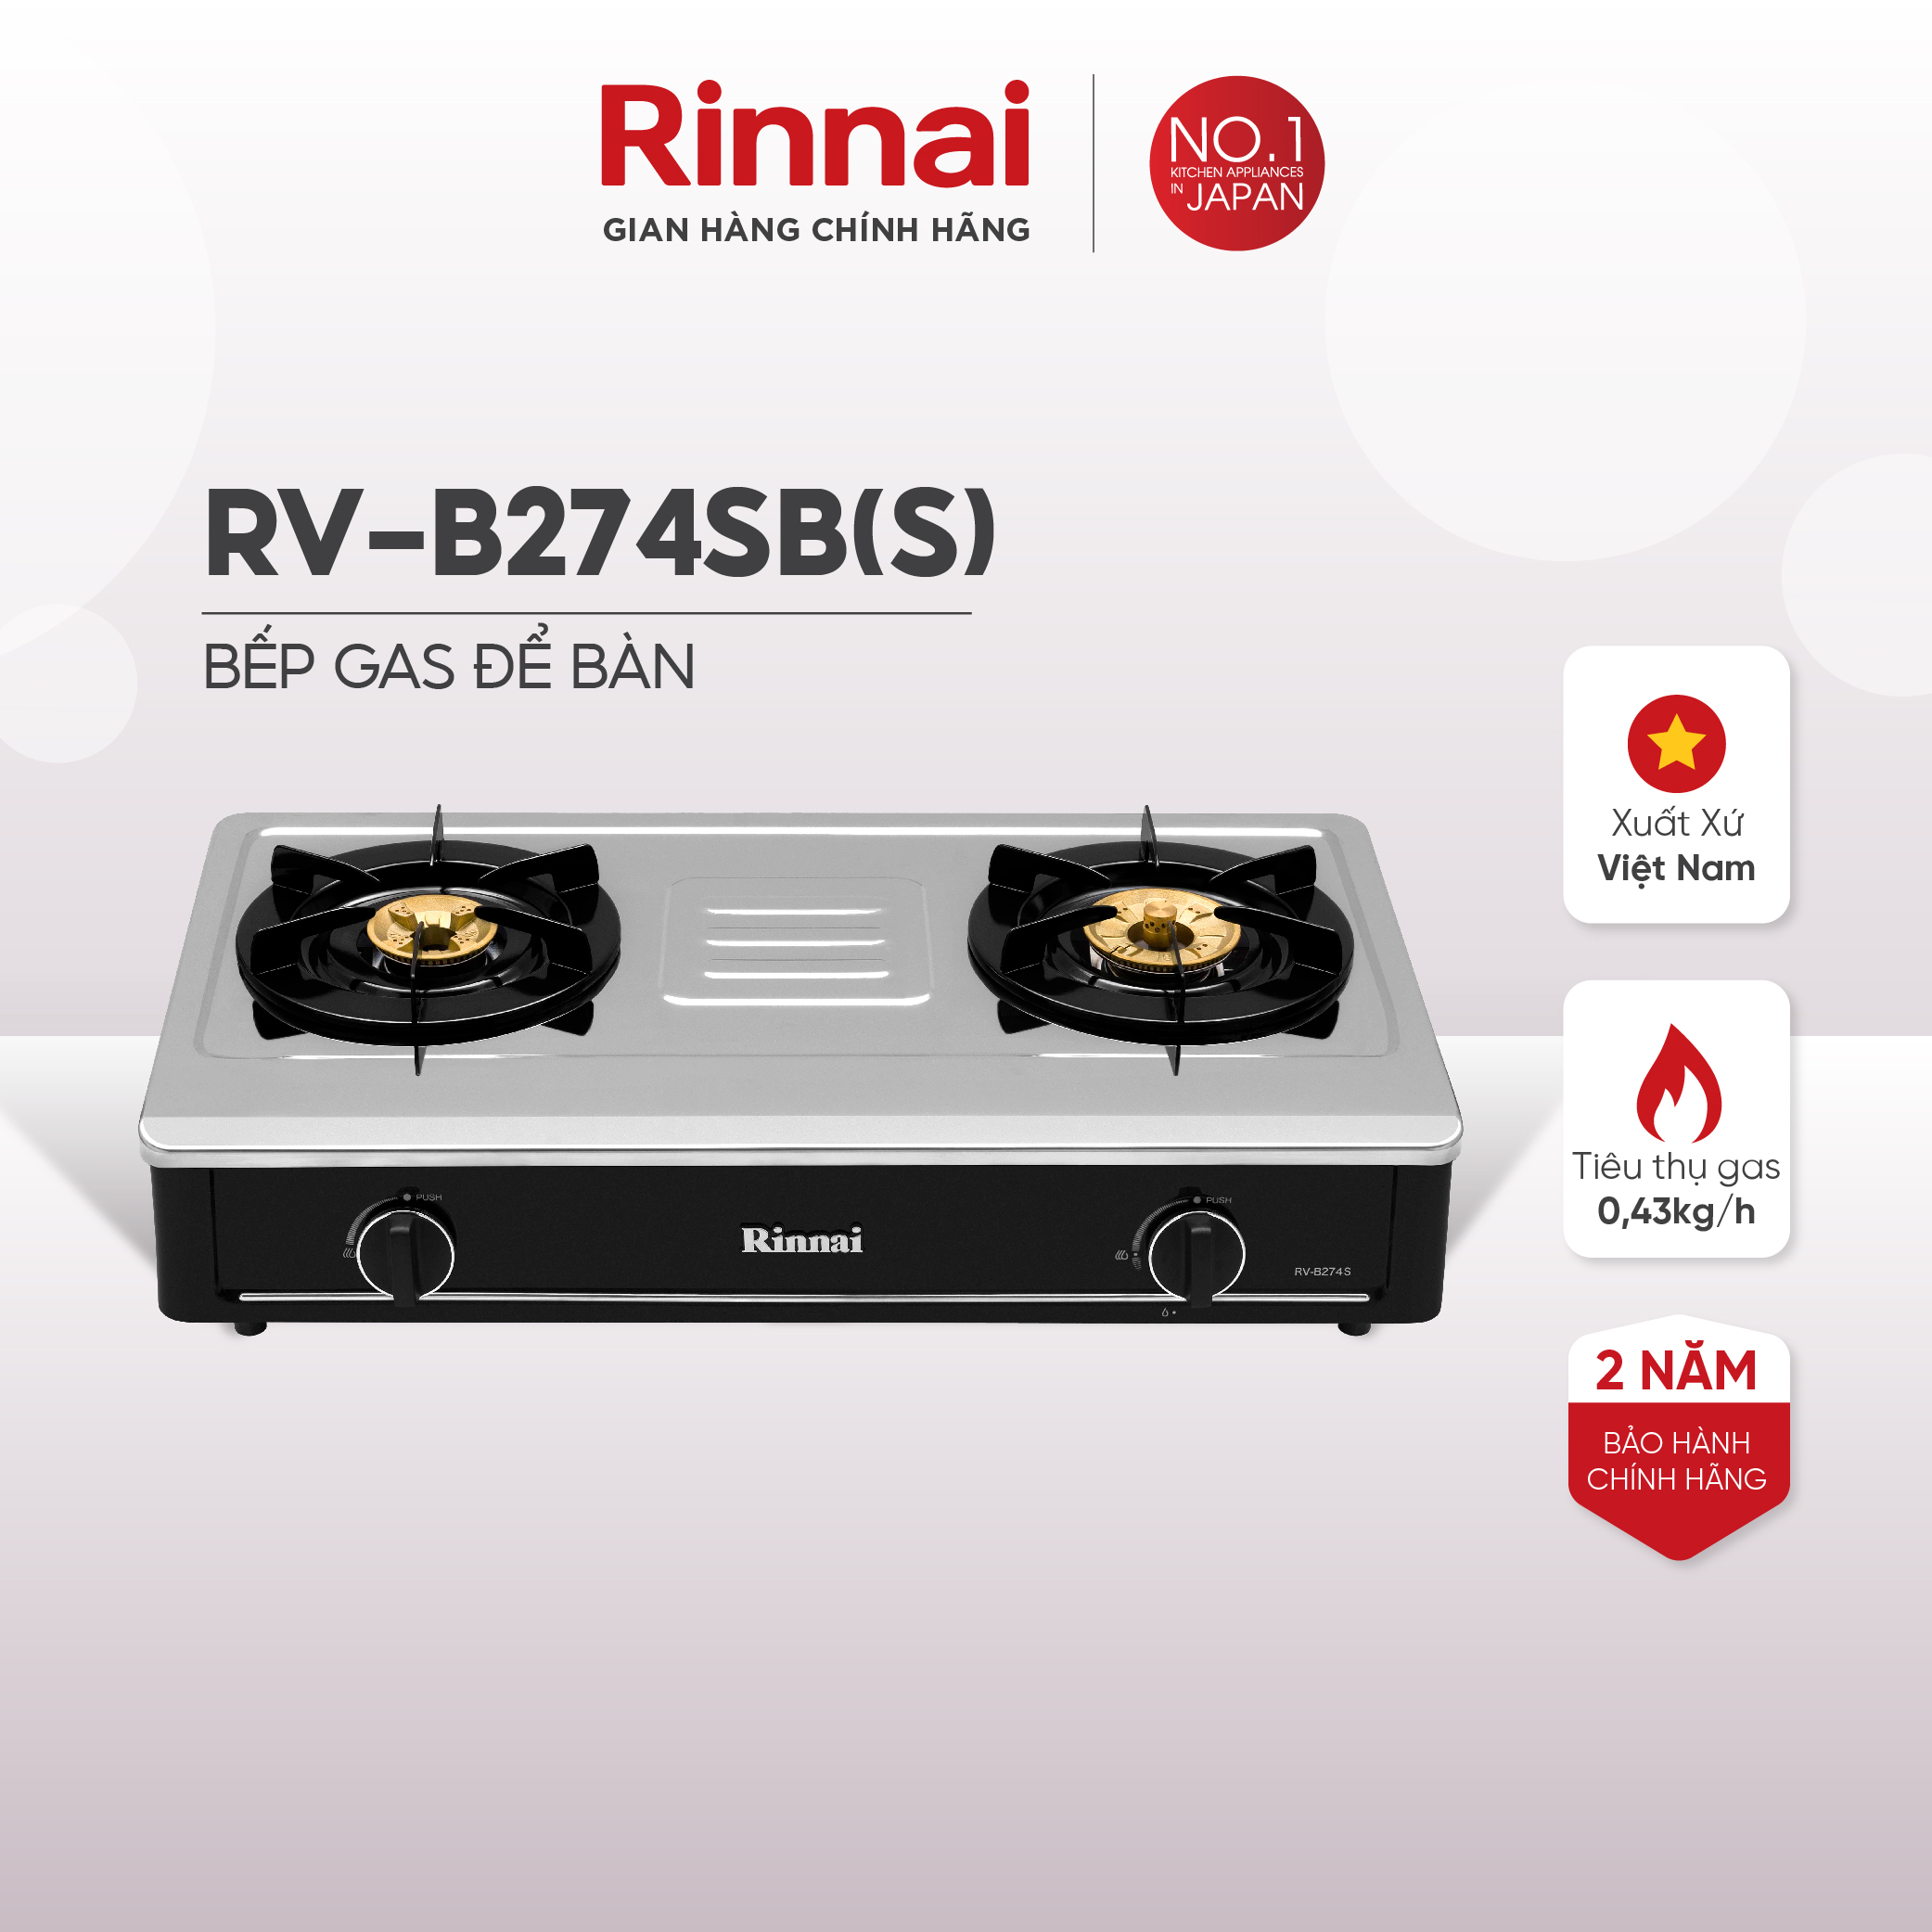 Bếp gas dương Rinnai RV-B274SB(S) mặt bếp inox và kiềng bếp men - Hàng chính hãng.